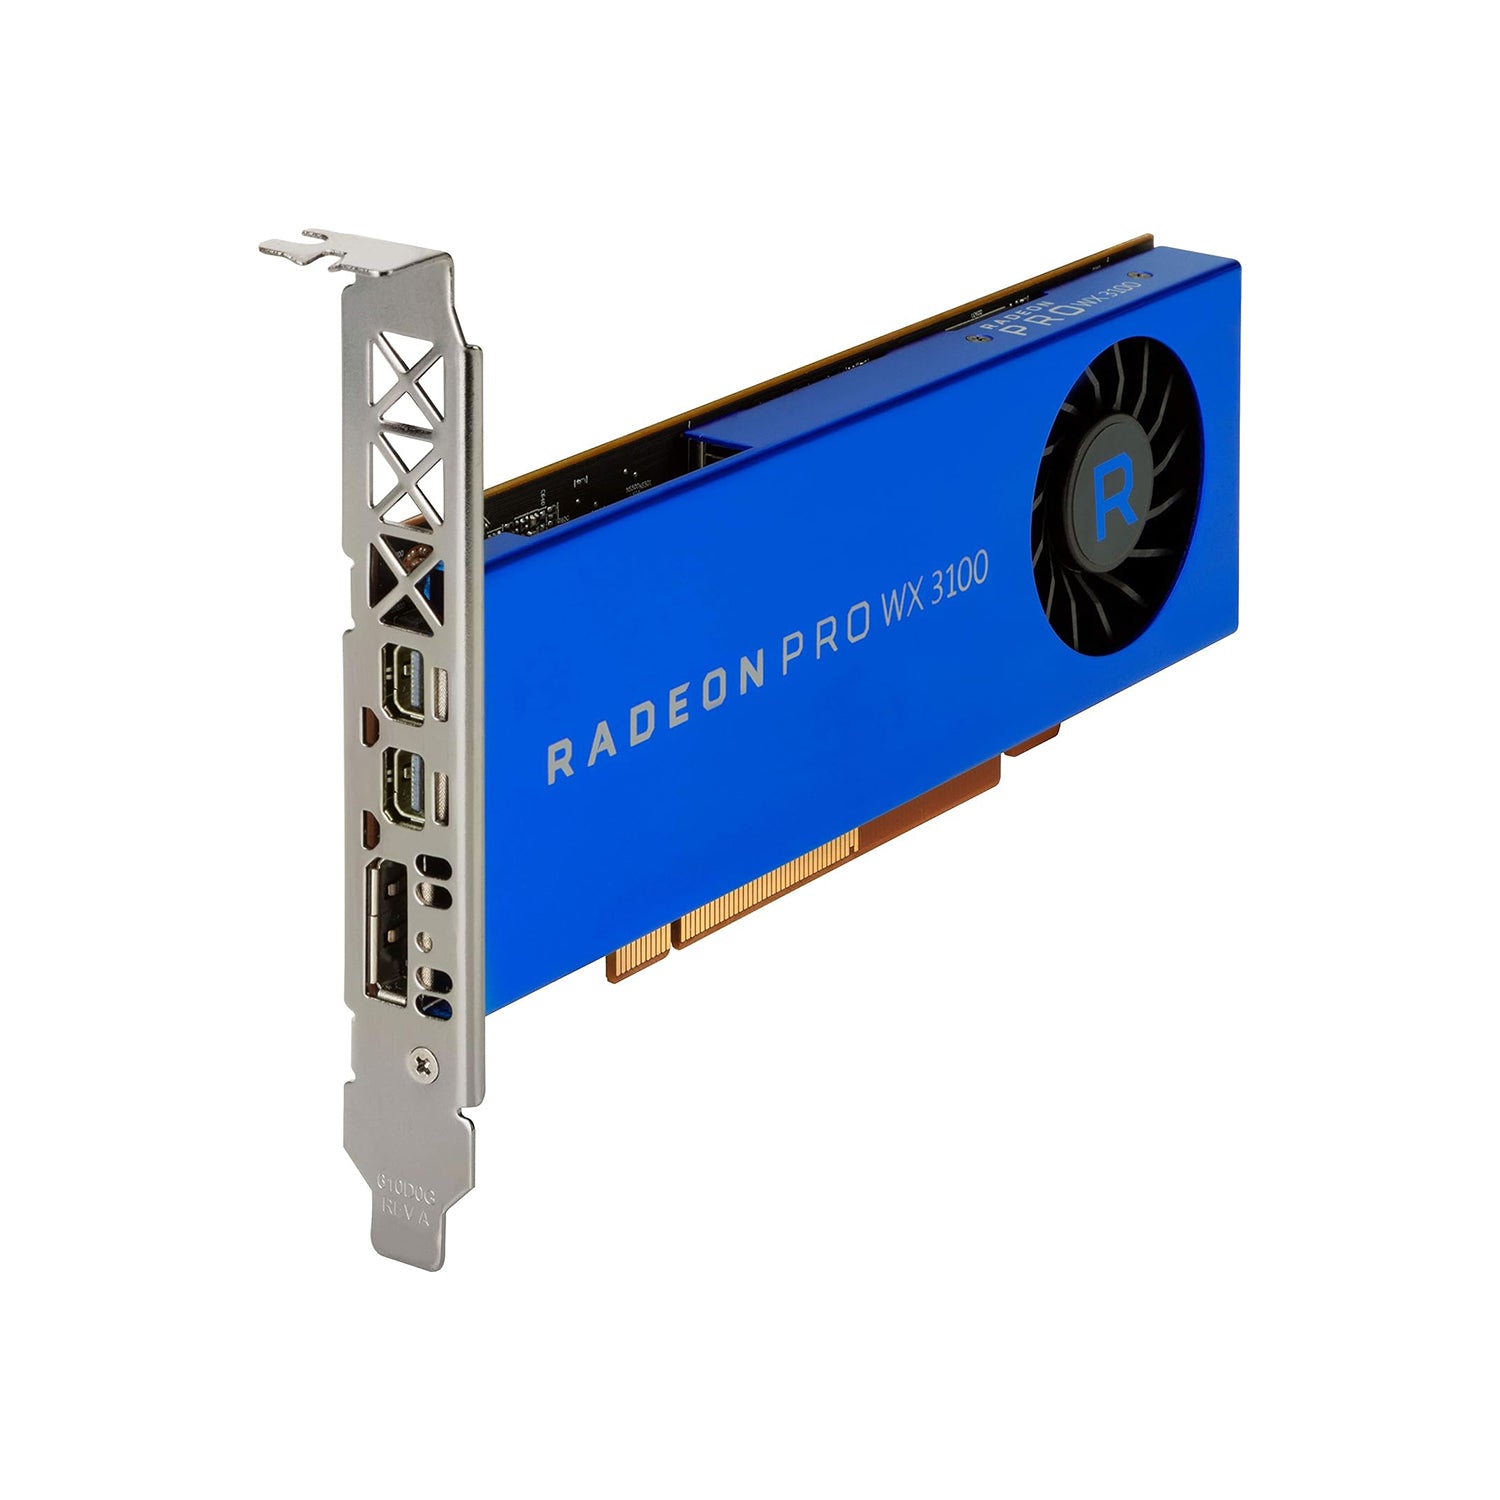 AMD Radeon Pro WX 3100 Professional Graphics Card - 4GB GDDR5 - 128-bit Interface - 512 Stream Processors - 2x Mini DisplayPorts, 1x DP - High Profile Video Card - (‎100-505999)  - Refurbished